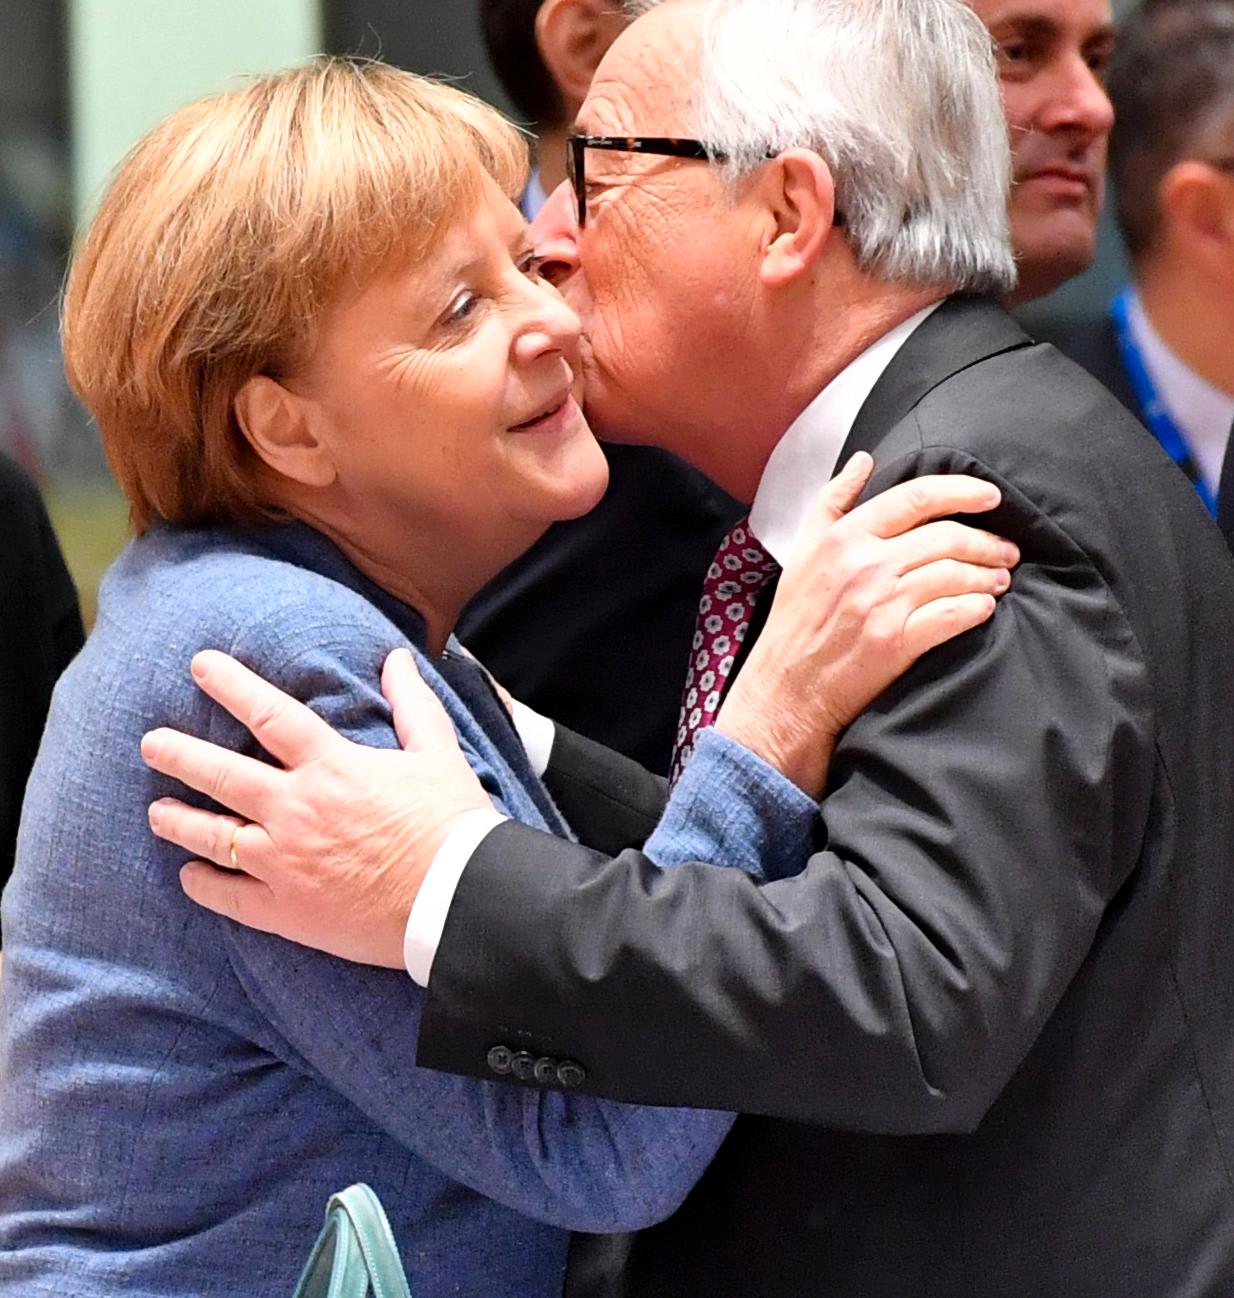 Tysklands forbundskansler Angela Merkel og EU-kommisjonens president, Jean- Claude Juncker viser følelser.